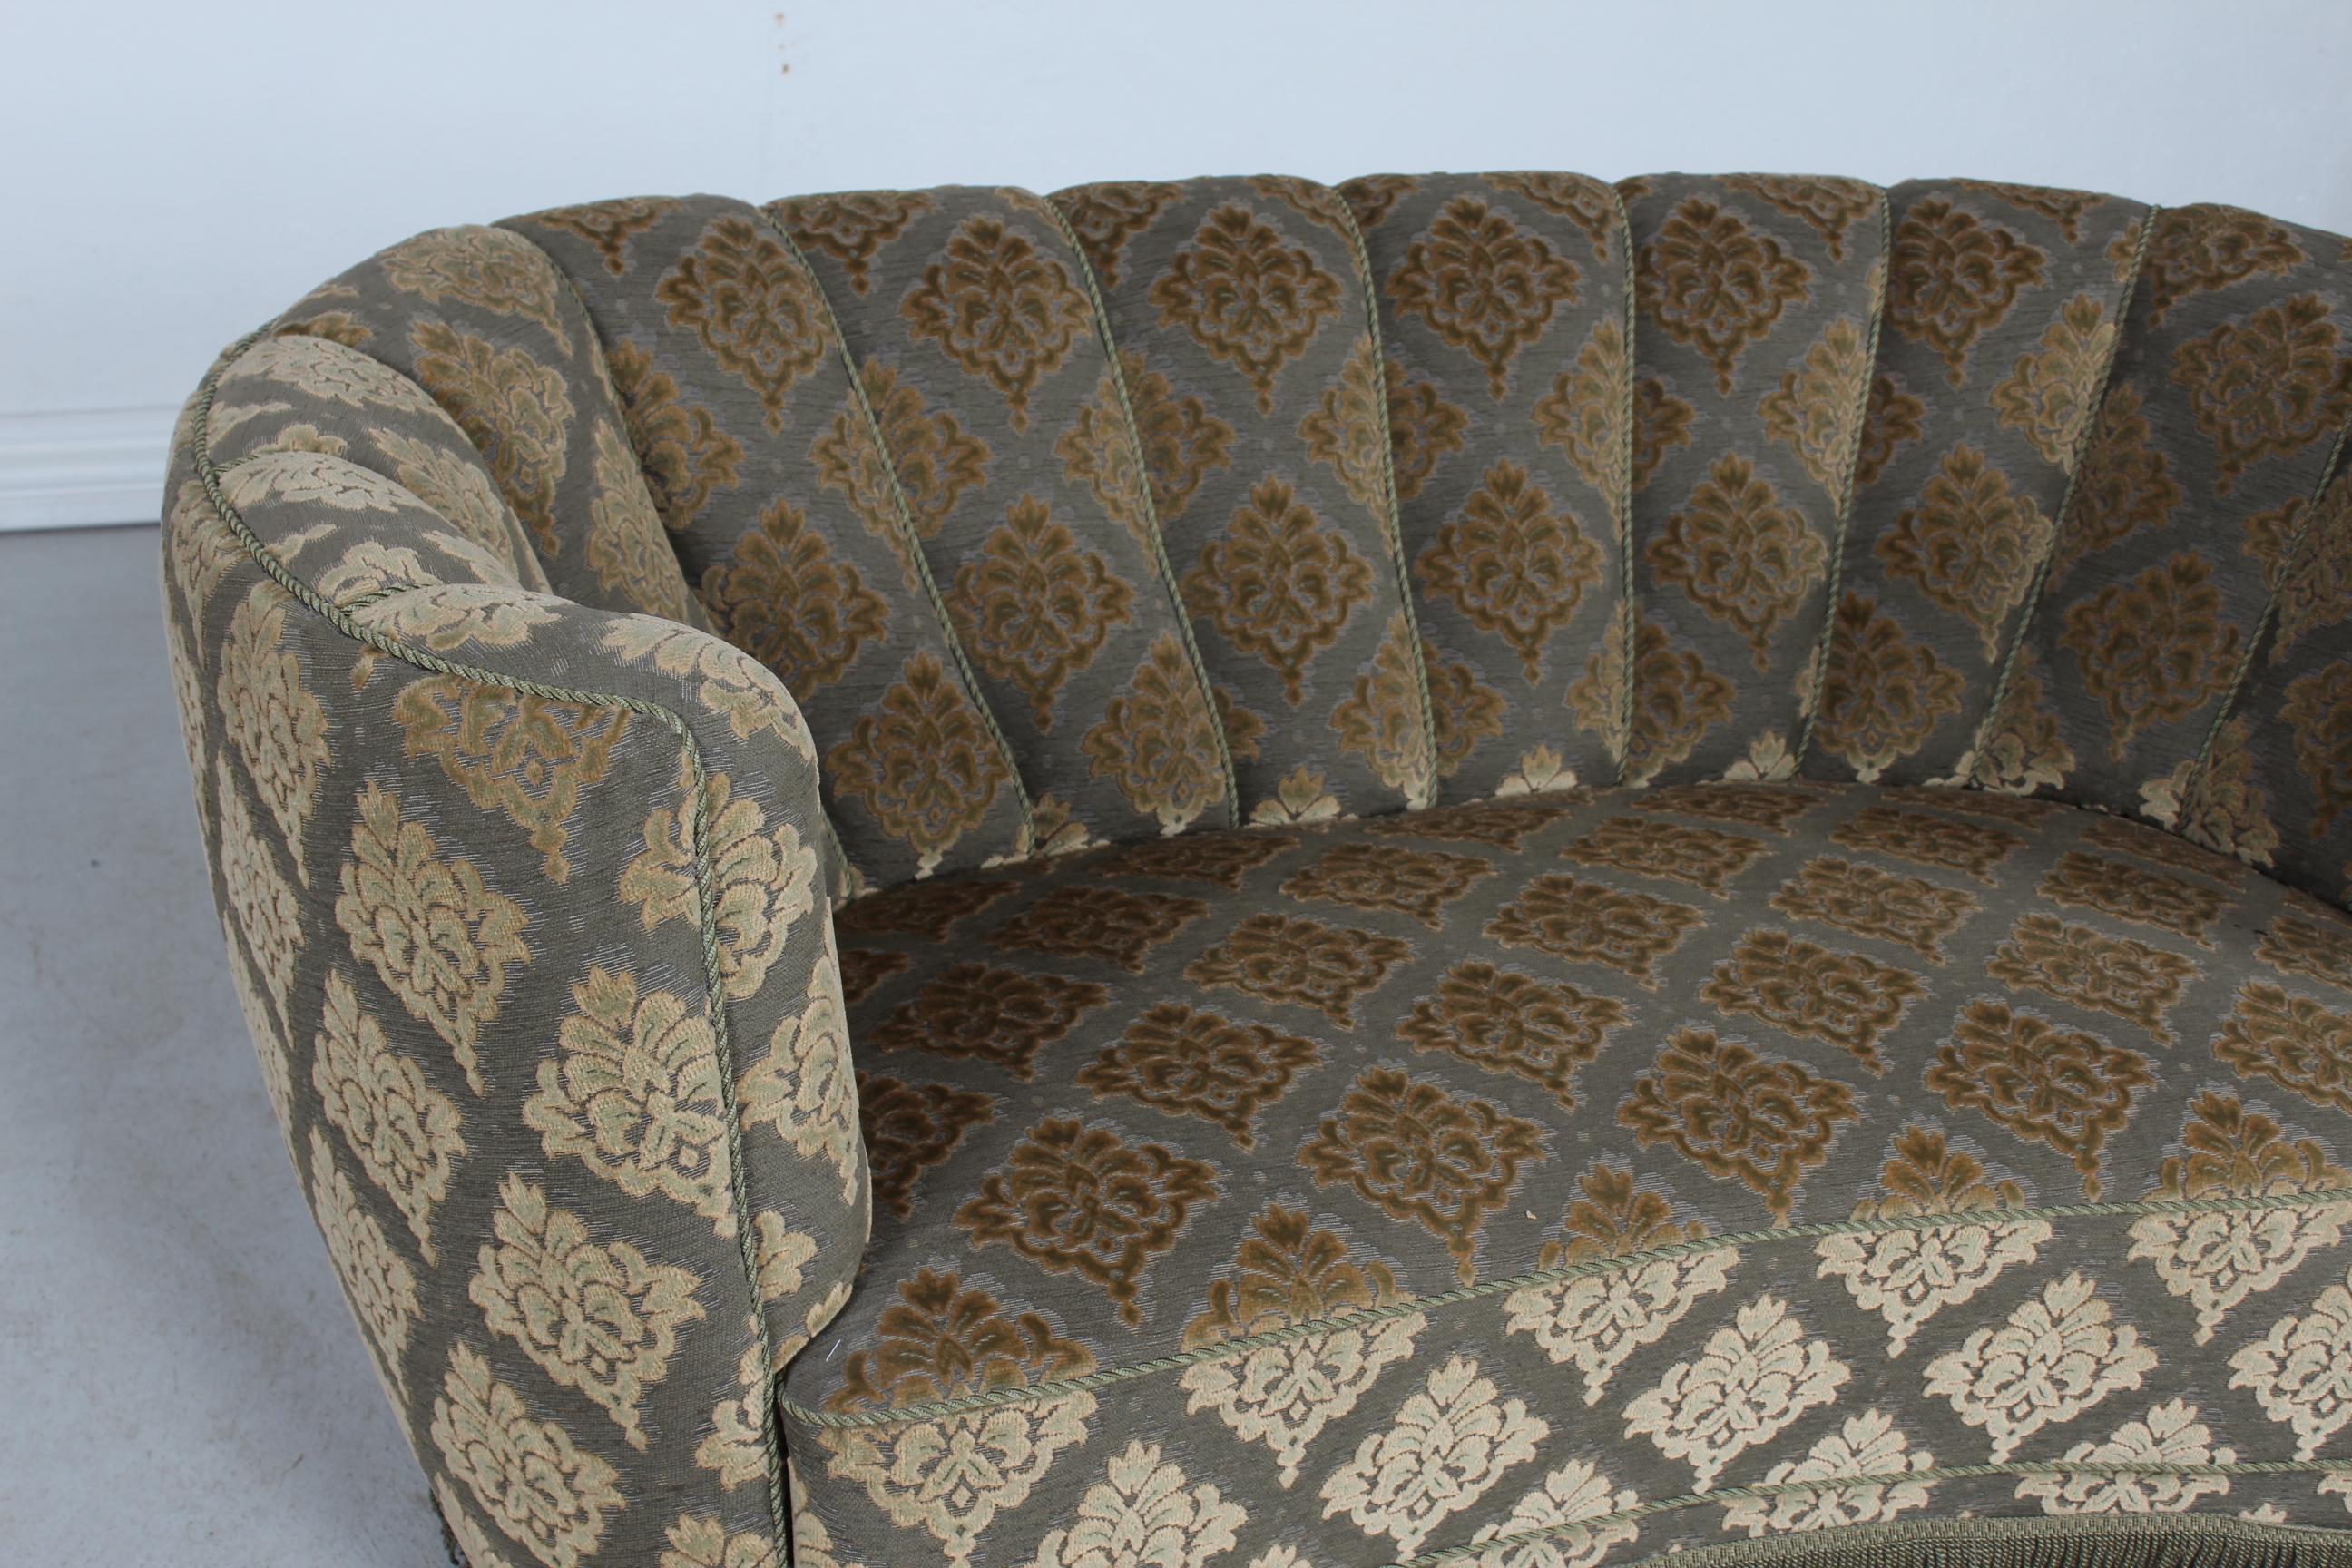 Dänisch gebogen  Art-Déco-Sofa in Bananenform aus den 1950er Jahren.
Die Beine sind aus dunkel gebeiztem Holz und das Sofa ist mit grünem Velours/Samt mit Blumenmuster und Fransen gepolstert.
Hergestellt von einem dänischen Möbelhersteller in den